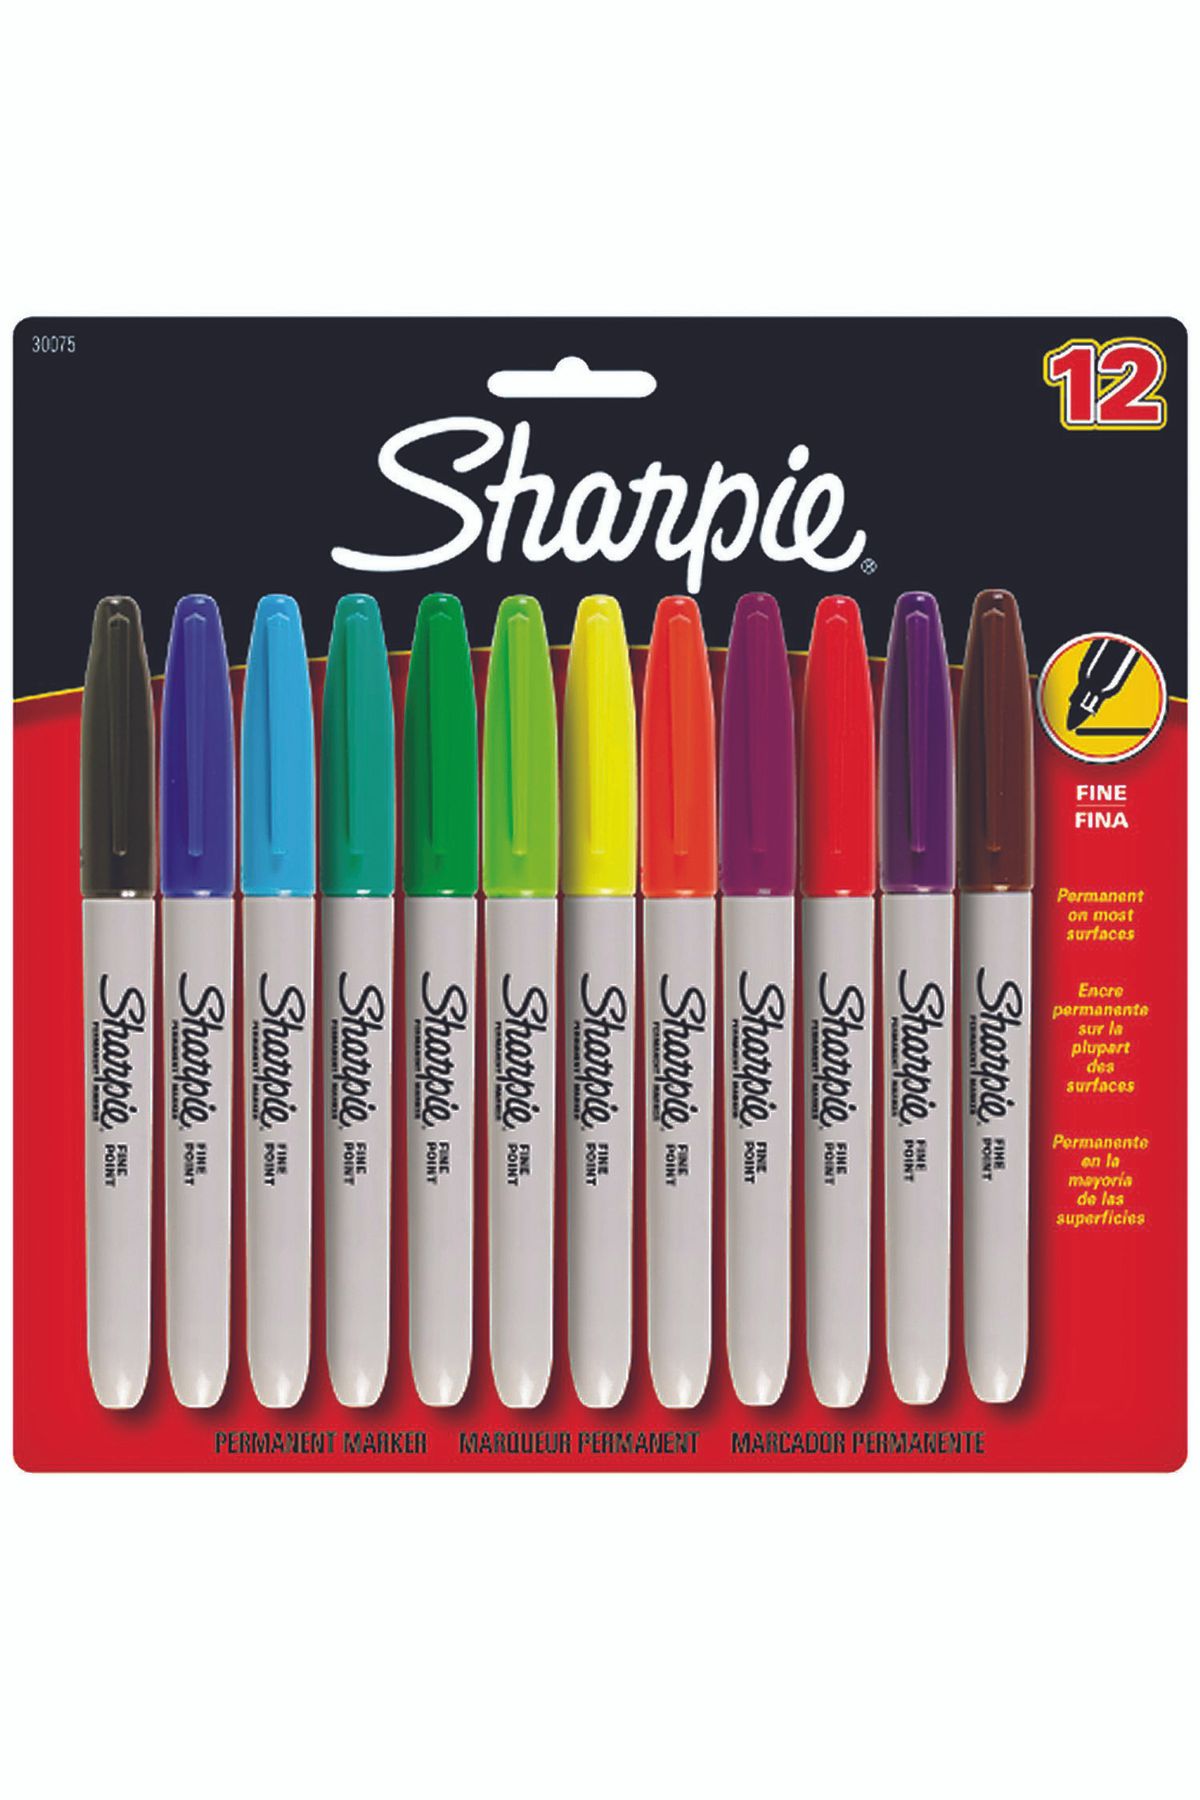 Sharpie Sharpıe 12 Li Fıne Permanent Markör Karışık 986052